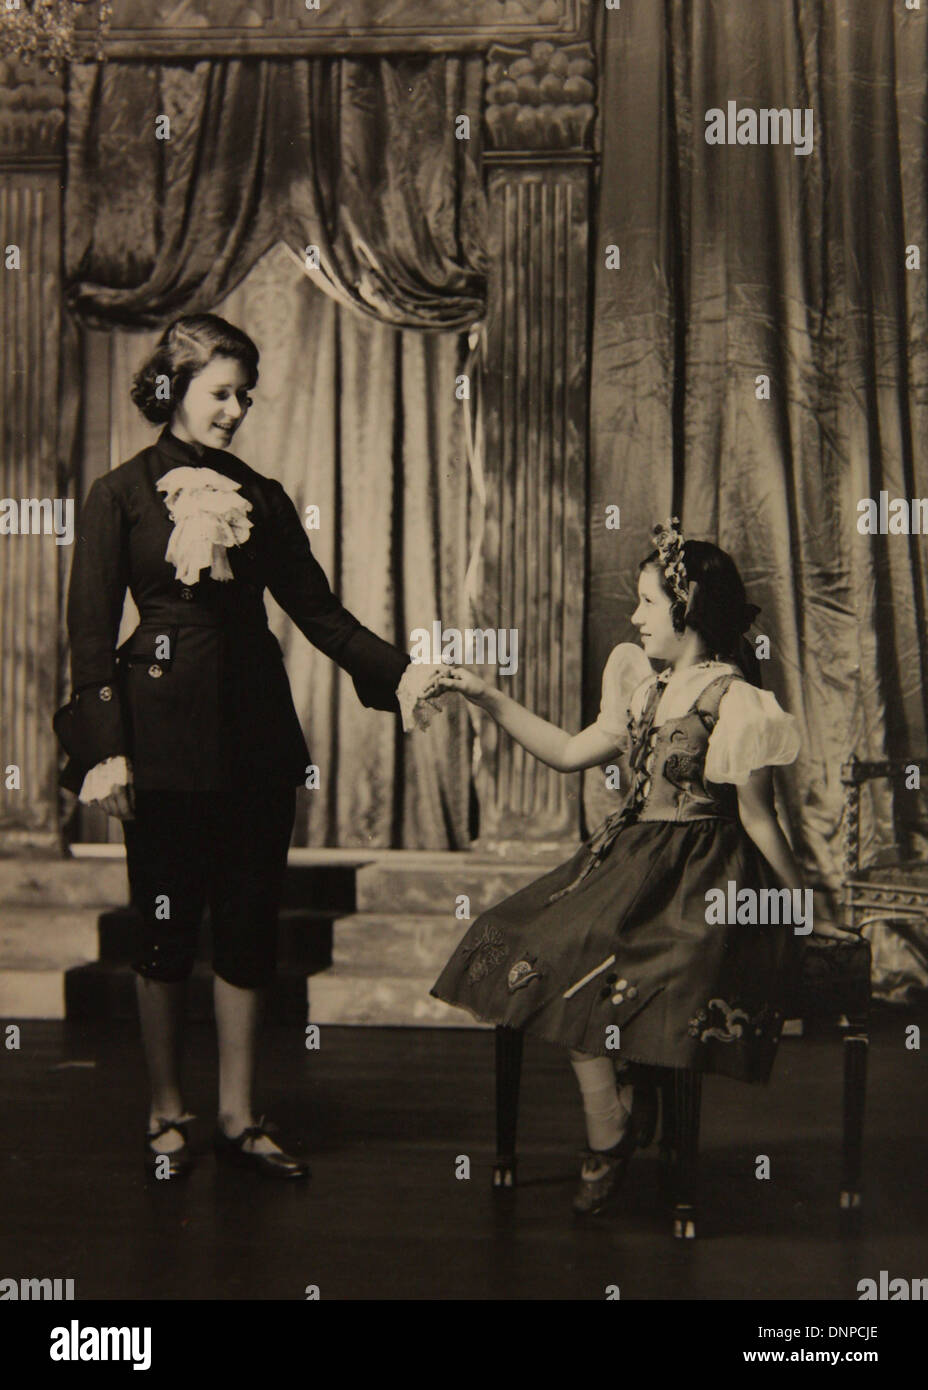 Recueillir des photographie de la princesse Margaret (à droite) et de la princesse Elizabeth (à gauche) dans la pièce de Cendrillon, 1941 Banque D'Images